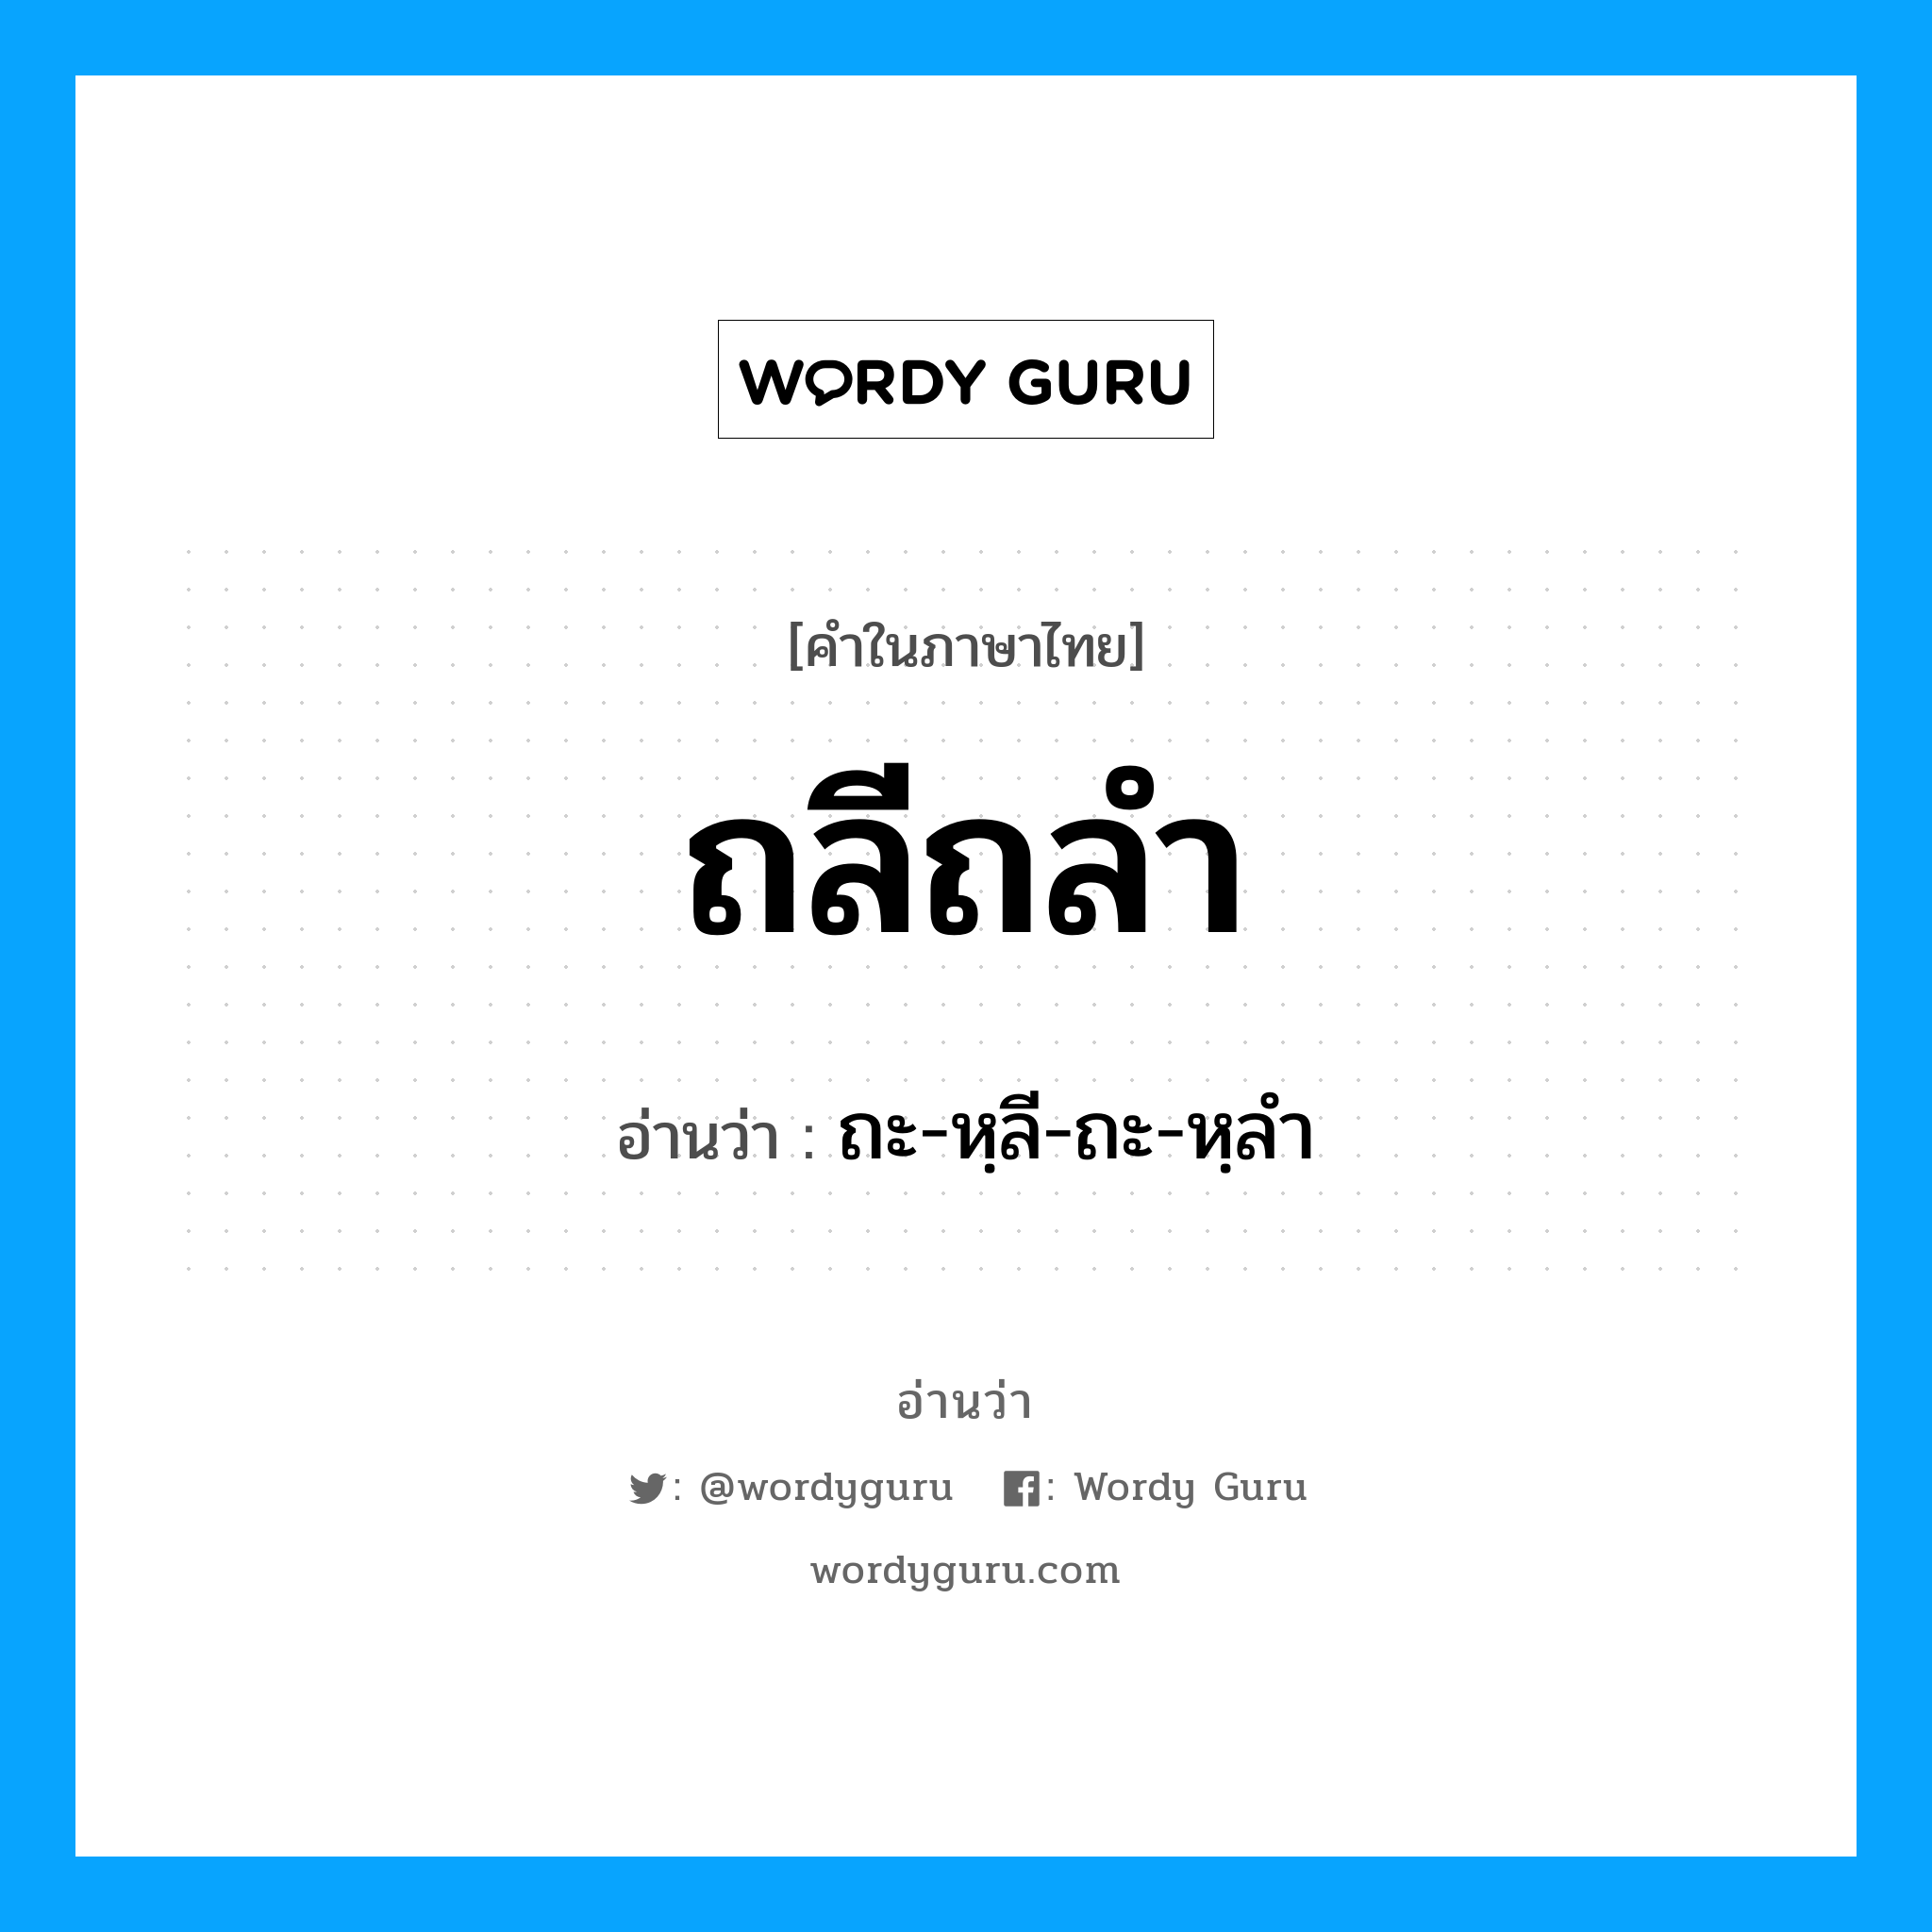 ถะ-หฺลี-ถะ-หฺลำ เป็นคำอ่านของคำไหน?, คำในภาษาไทย ถะ-หฺลี-ถะ-หฺลำ อ่านว่า ถลีถลำ